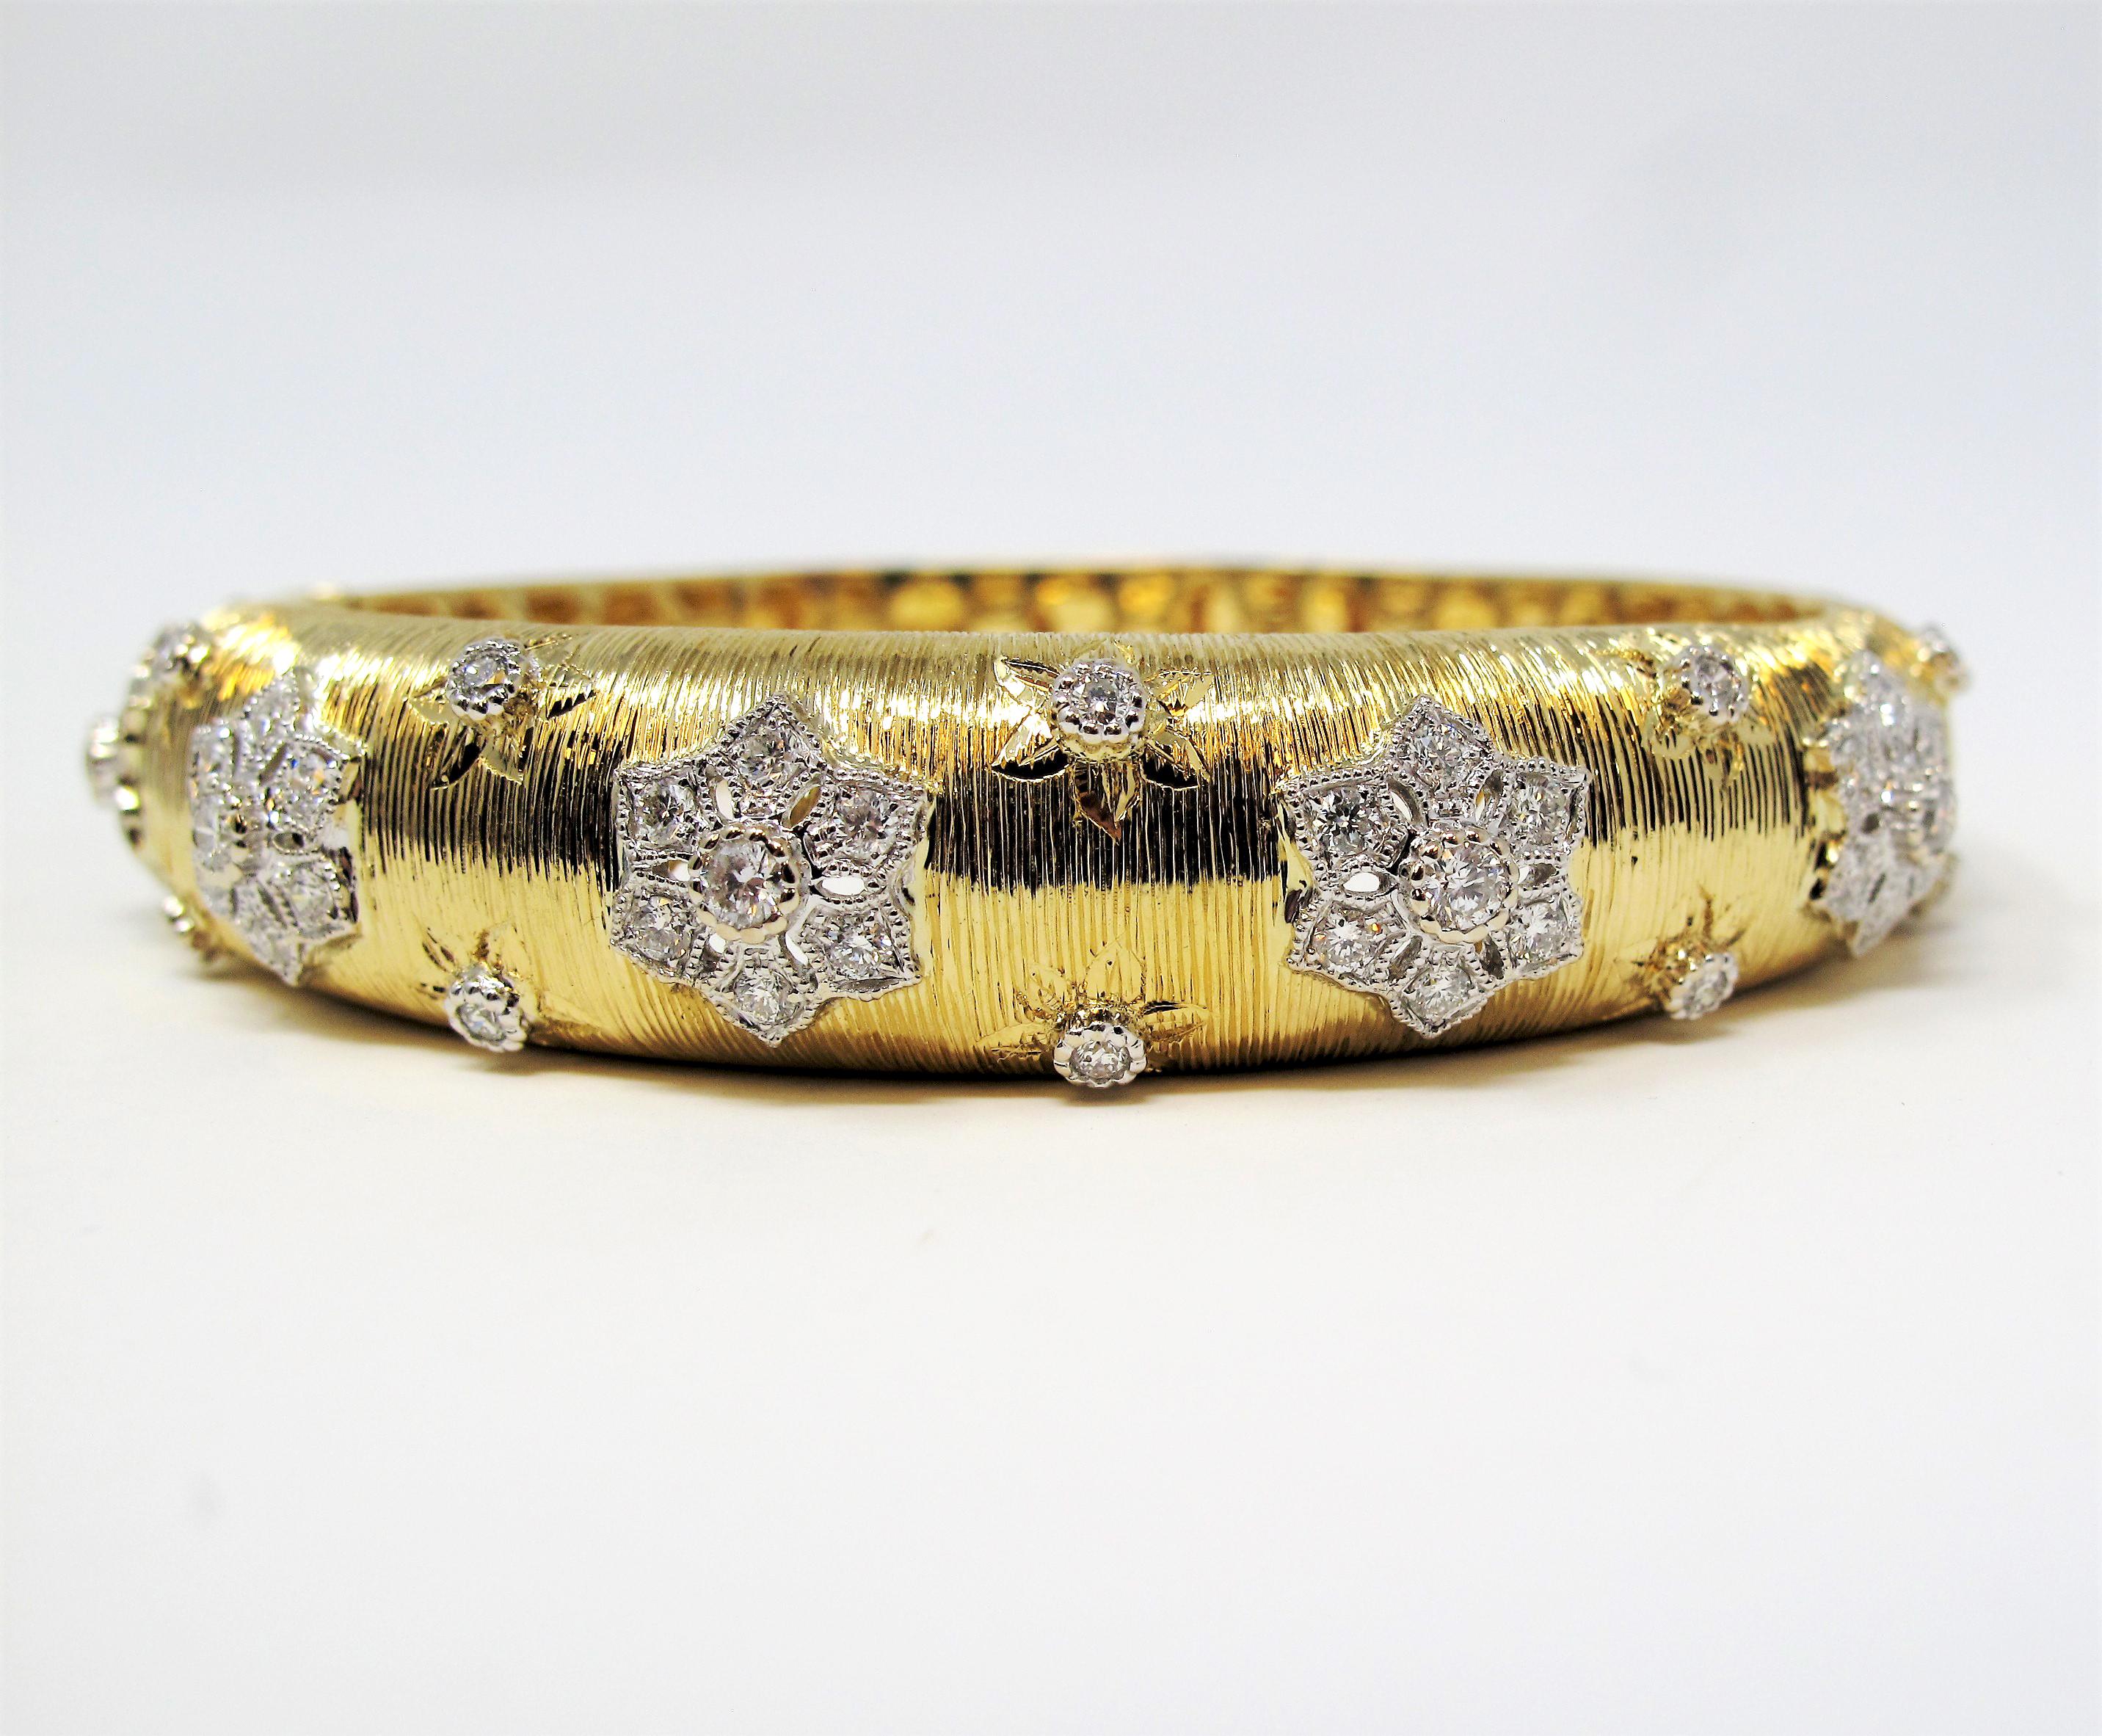 Verlieben Sie sich in diesen romantischen Diamant-Armreif mit Blumenmuster. Diese schöne  Das Armband aus strukturiertem Gelbgold ist mit funkelnden runden weißen Diamanten in einem floralen Design verziert. Die Eleganz ist atemberaubend, ohne